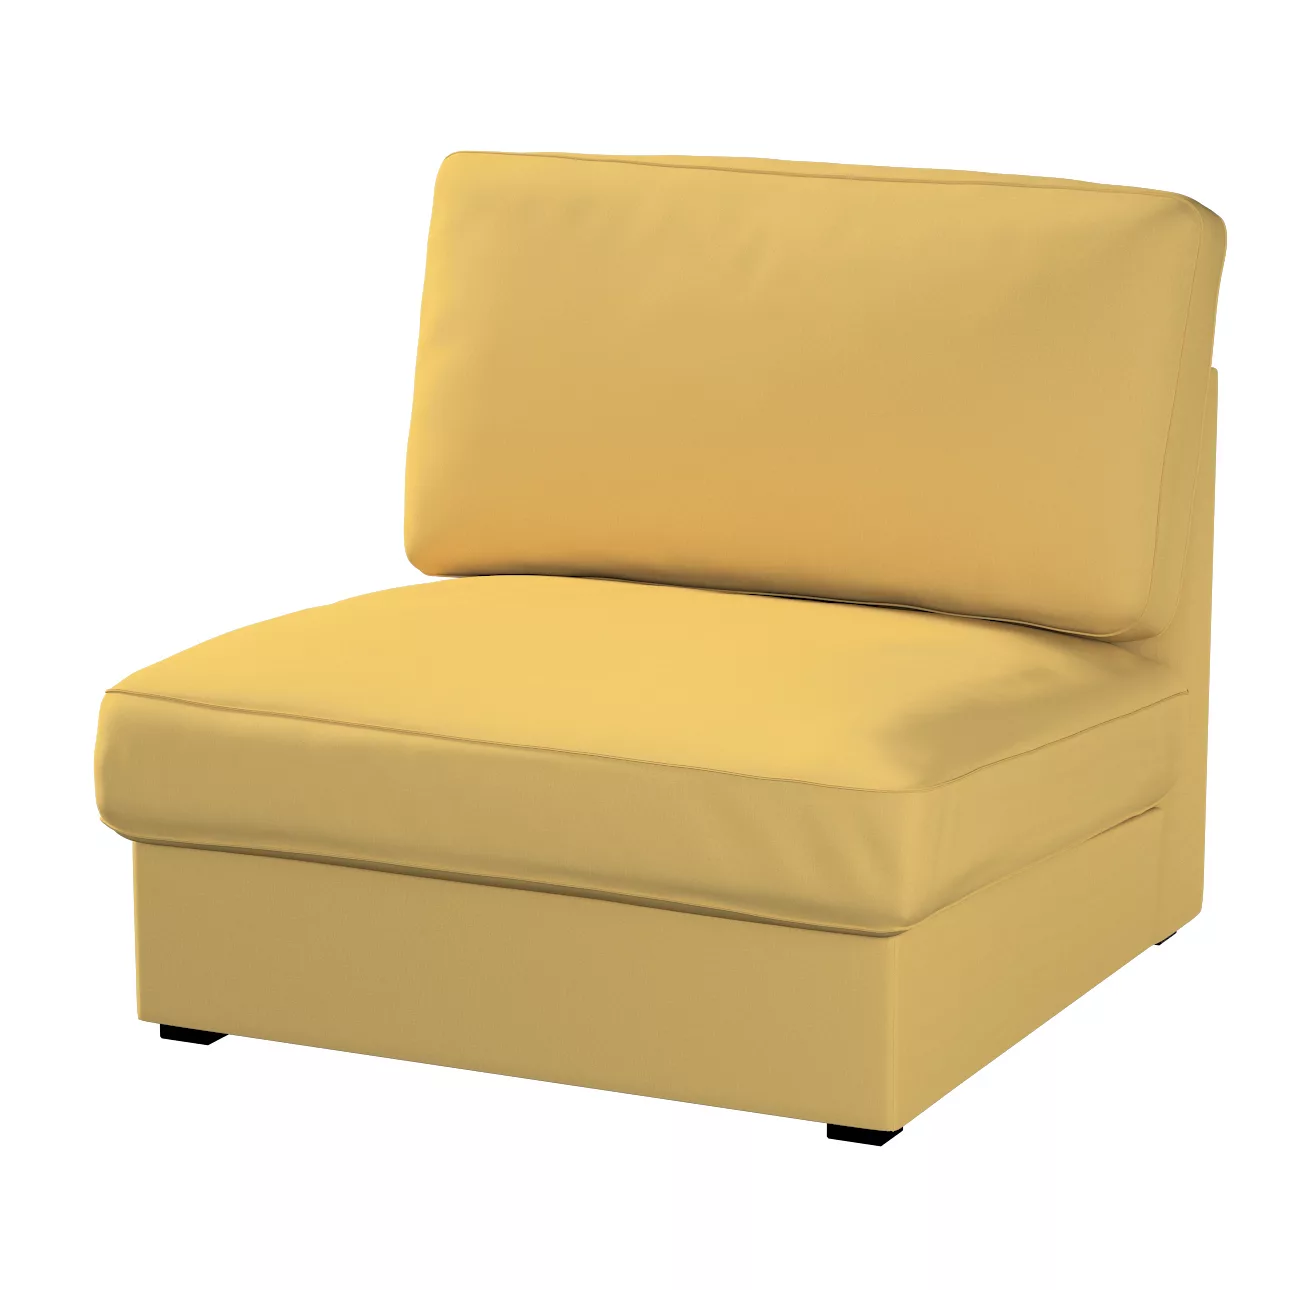 Bezug für Kivik Sessel nicht ausklappbar, chiffongelb, Bezug für Sessel Kiv günstig online kaufen